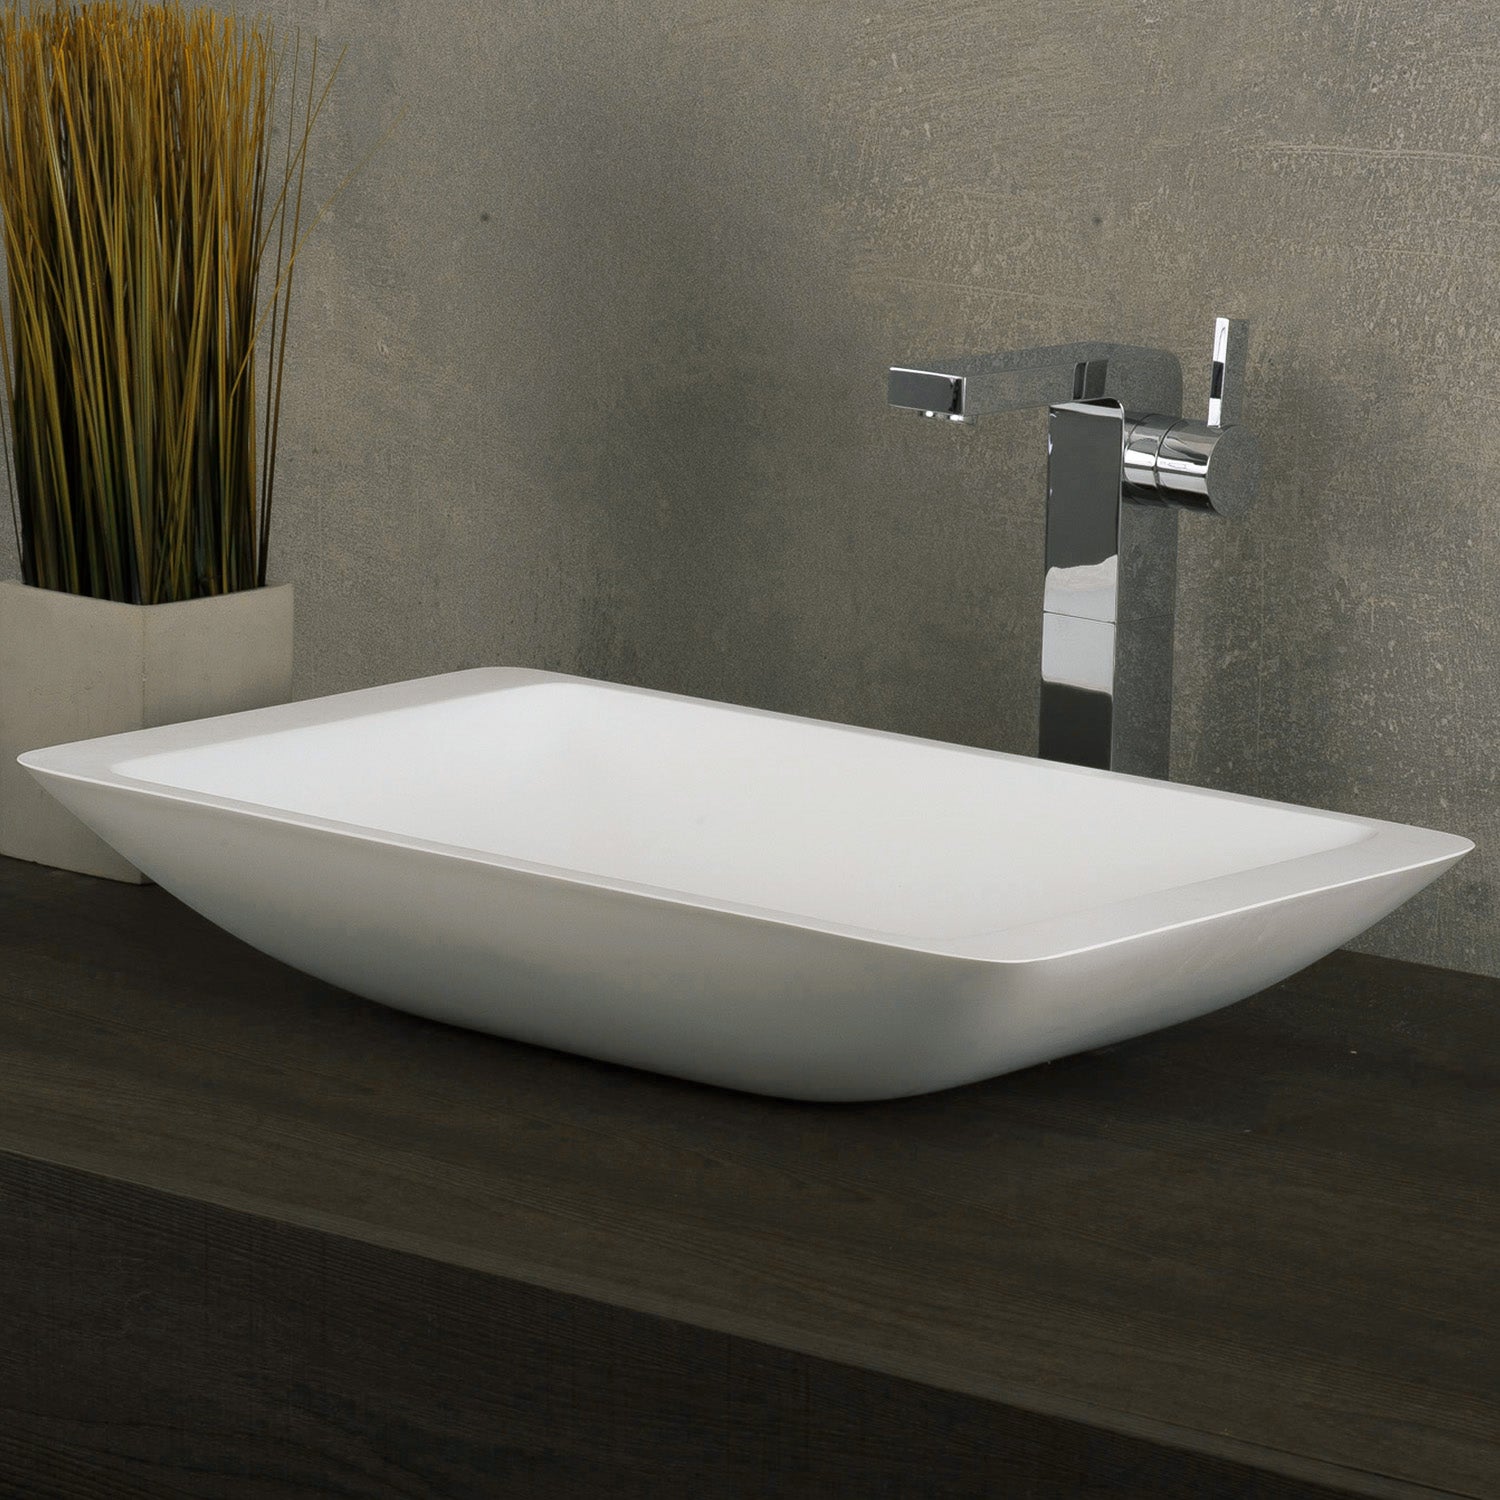 DAX Lavabo rectangular de superficie sólida para baño de un solo tazón, acabado blanco mate, 22-7/8 x 13-3/8 x 4 pulgadas (DAX-AB-1321)